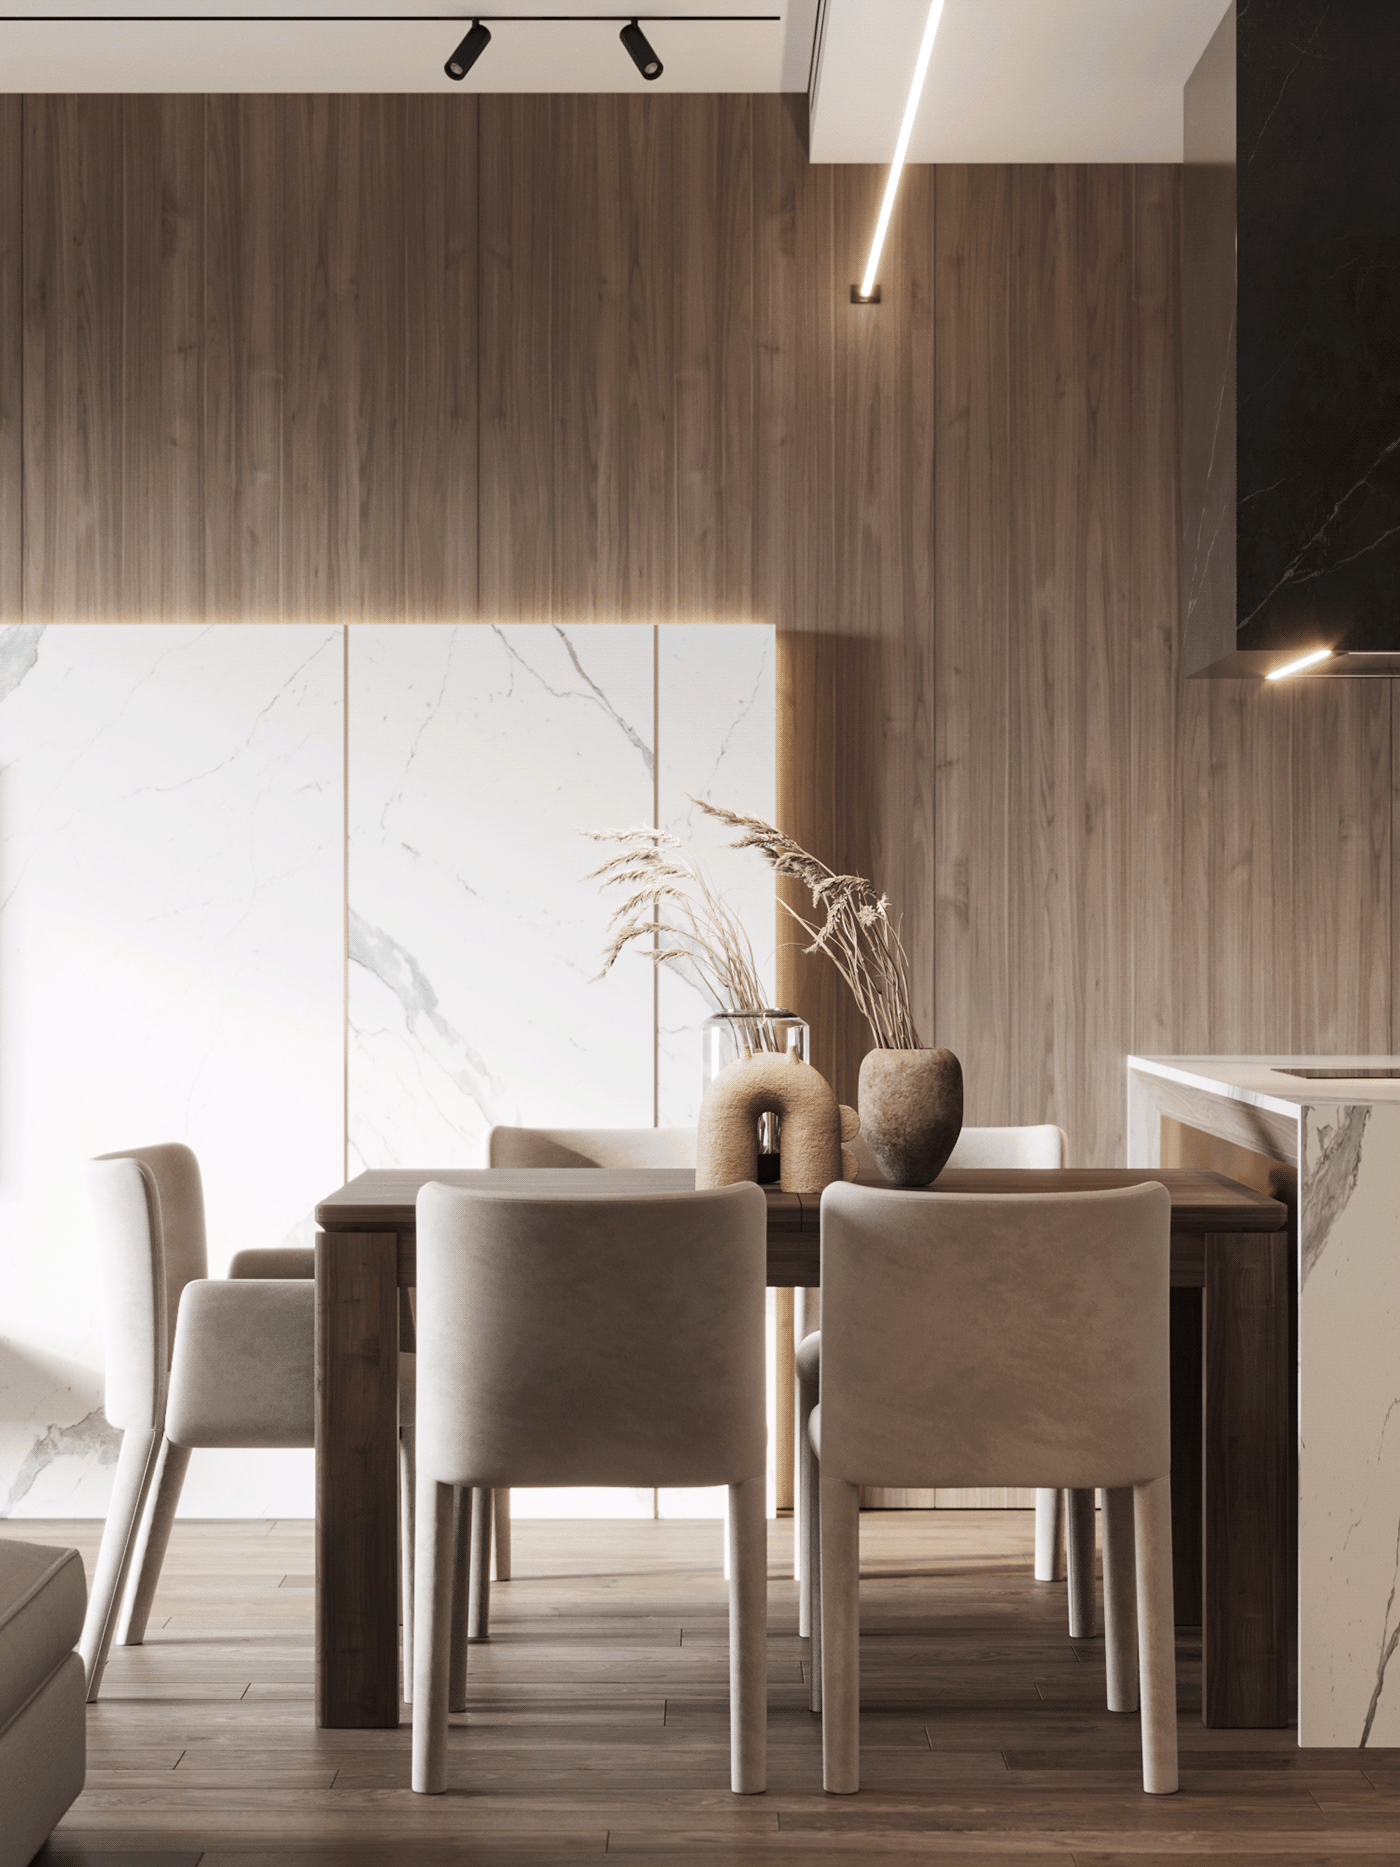 design designer interior design  interiordesign minimaldesign Minimalism minimalist modern Modern Design Render